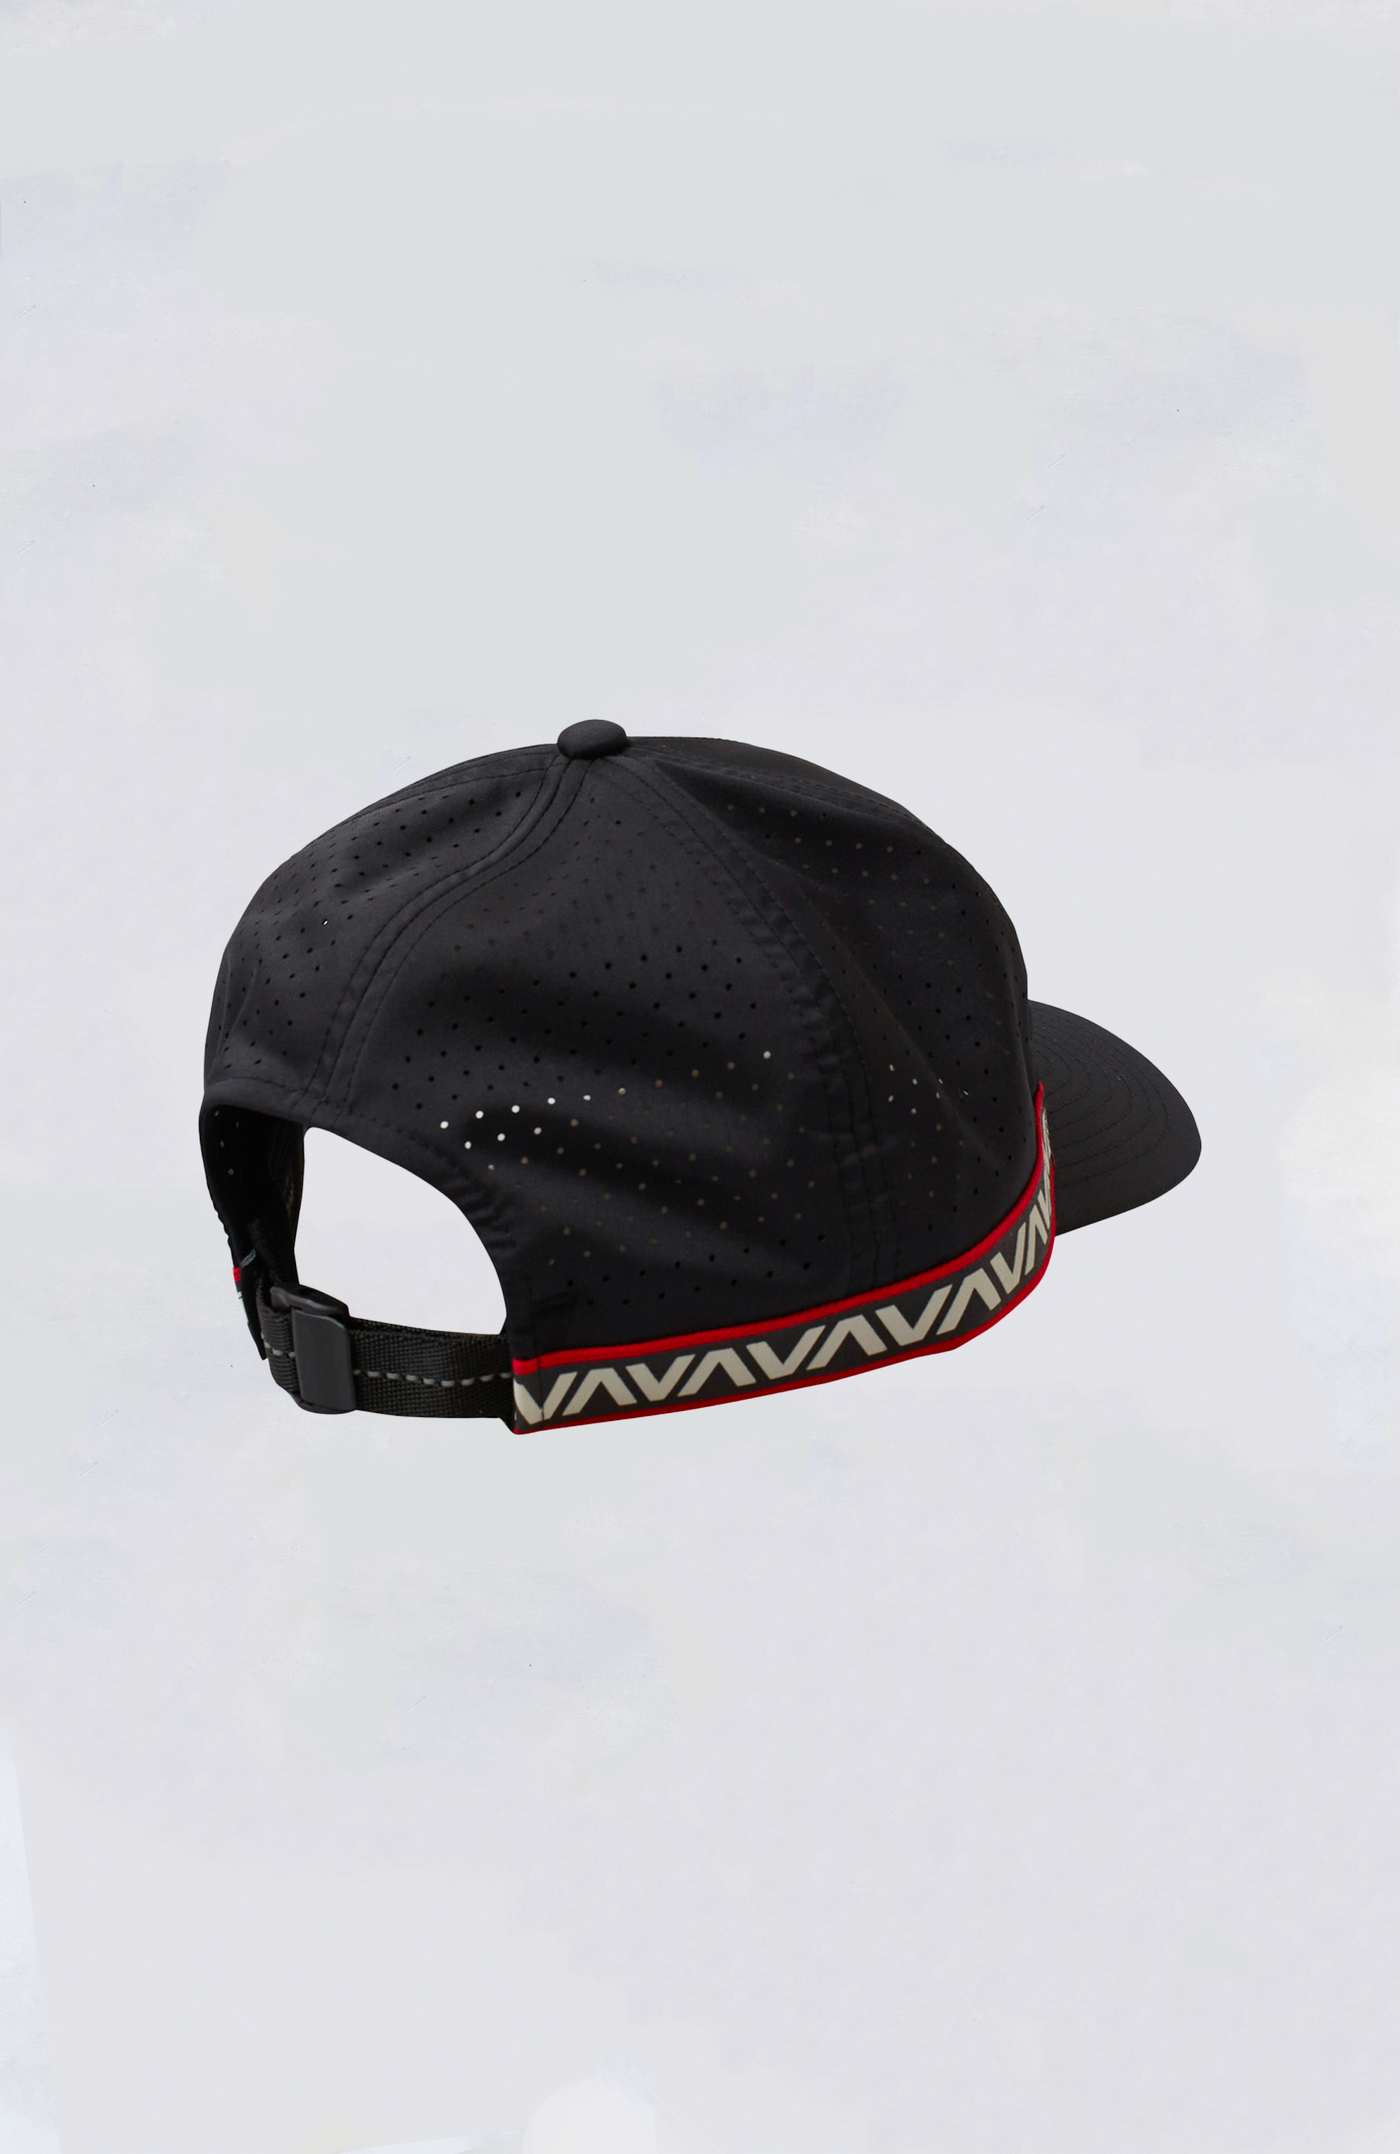 RVCA Hat - Hawaii Banded Cap